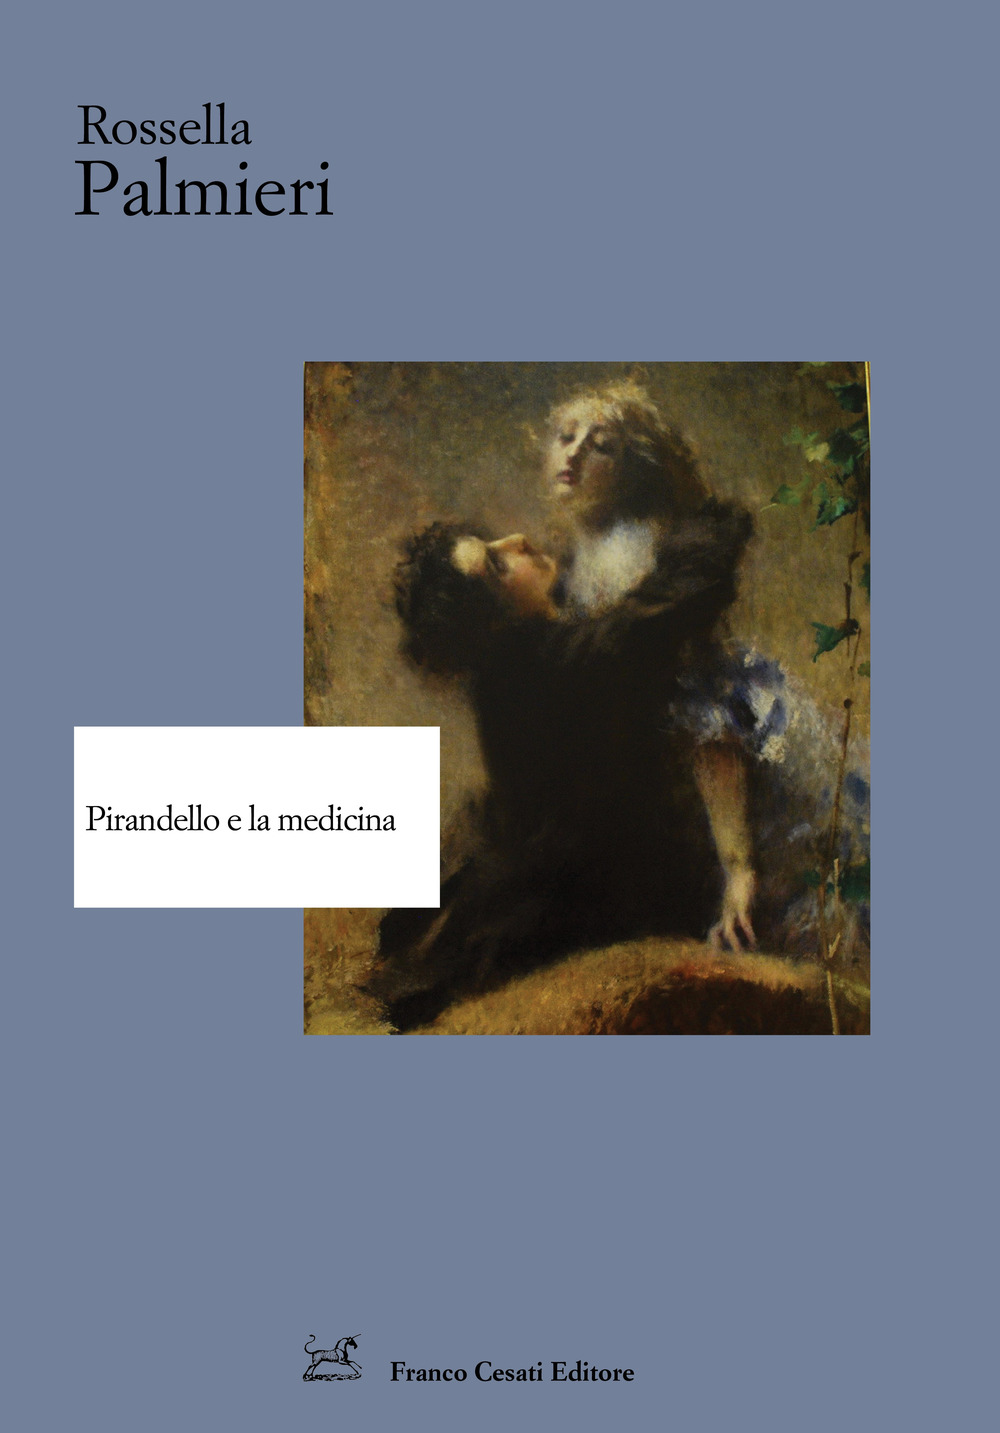 Image of Pirandello e la medicina